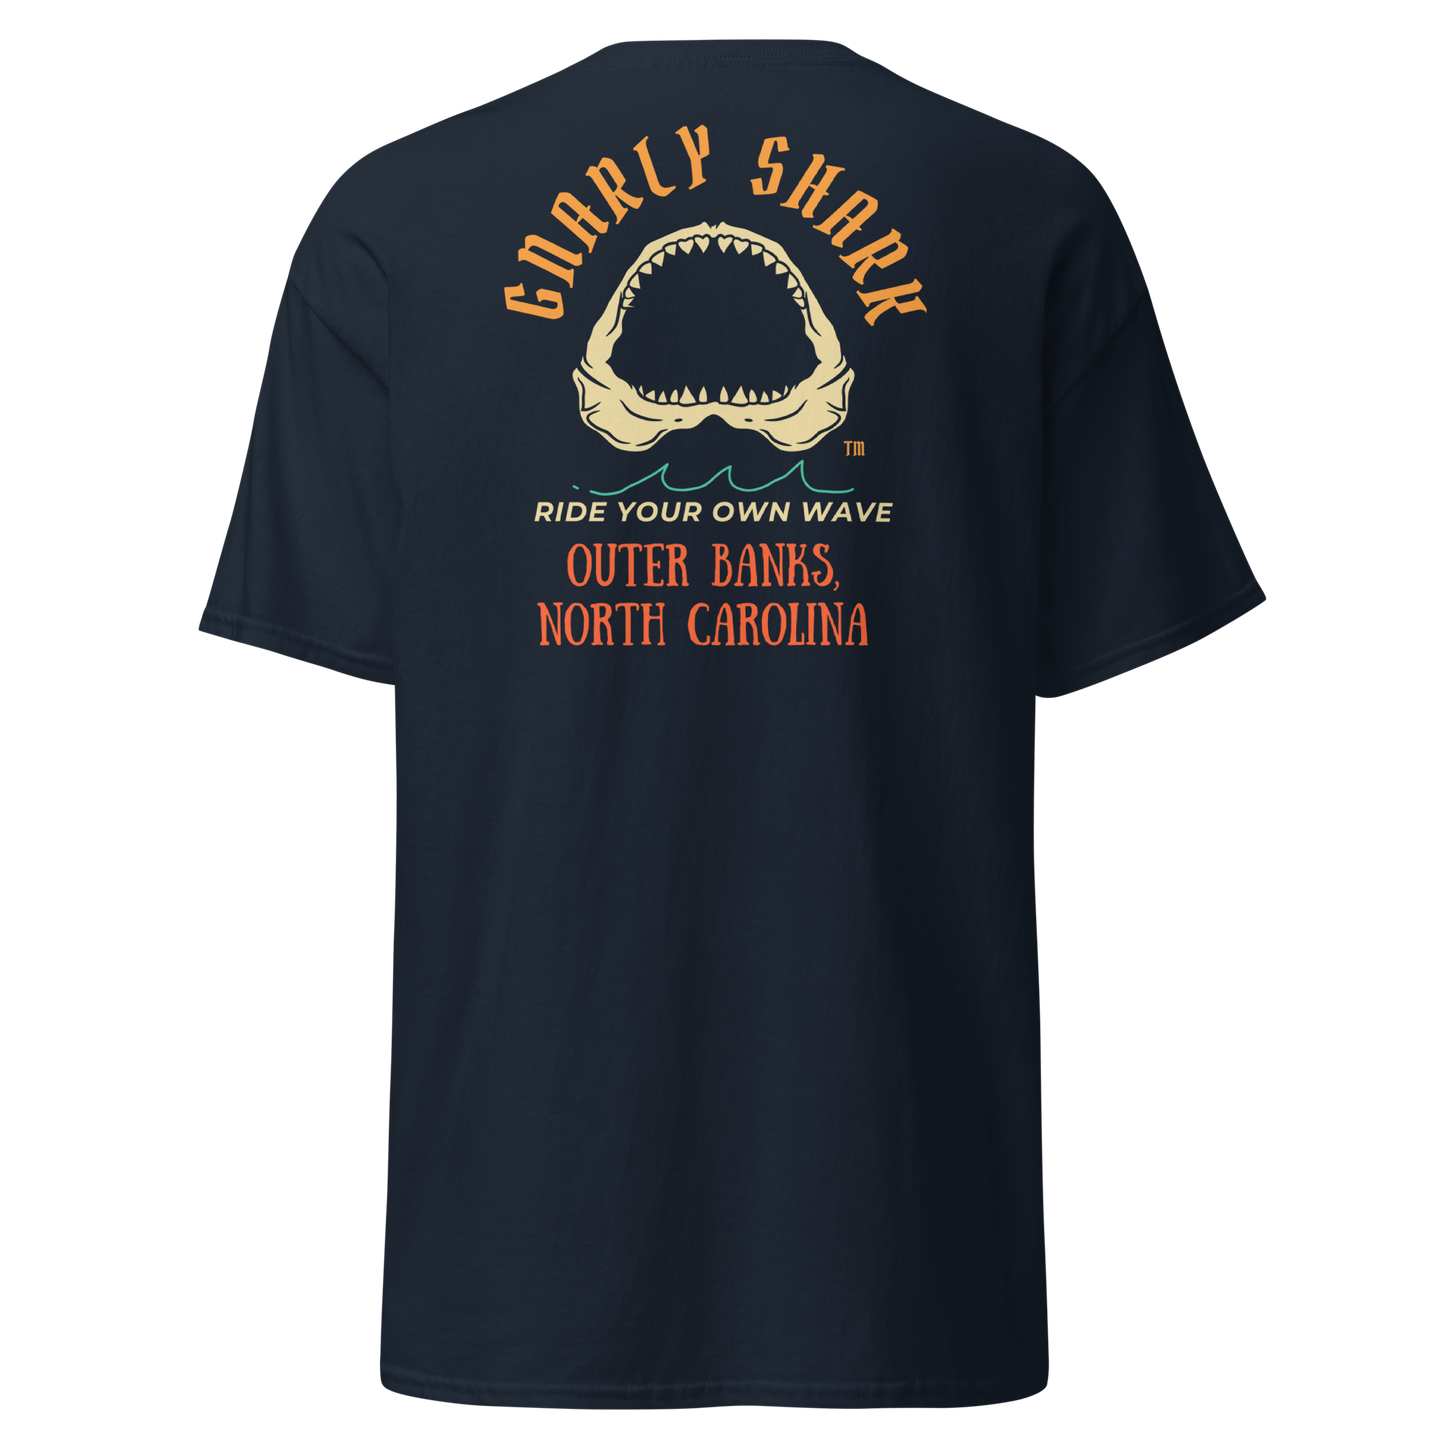 Gnarly Shark Outer Banks North Carolina T-Shirt - Front / Back - Gildan classic 5000